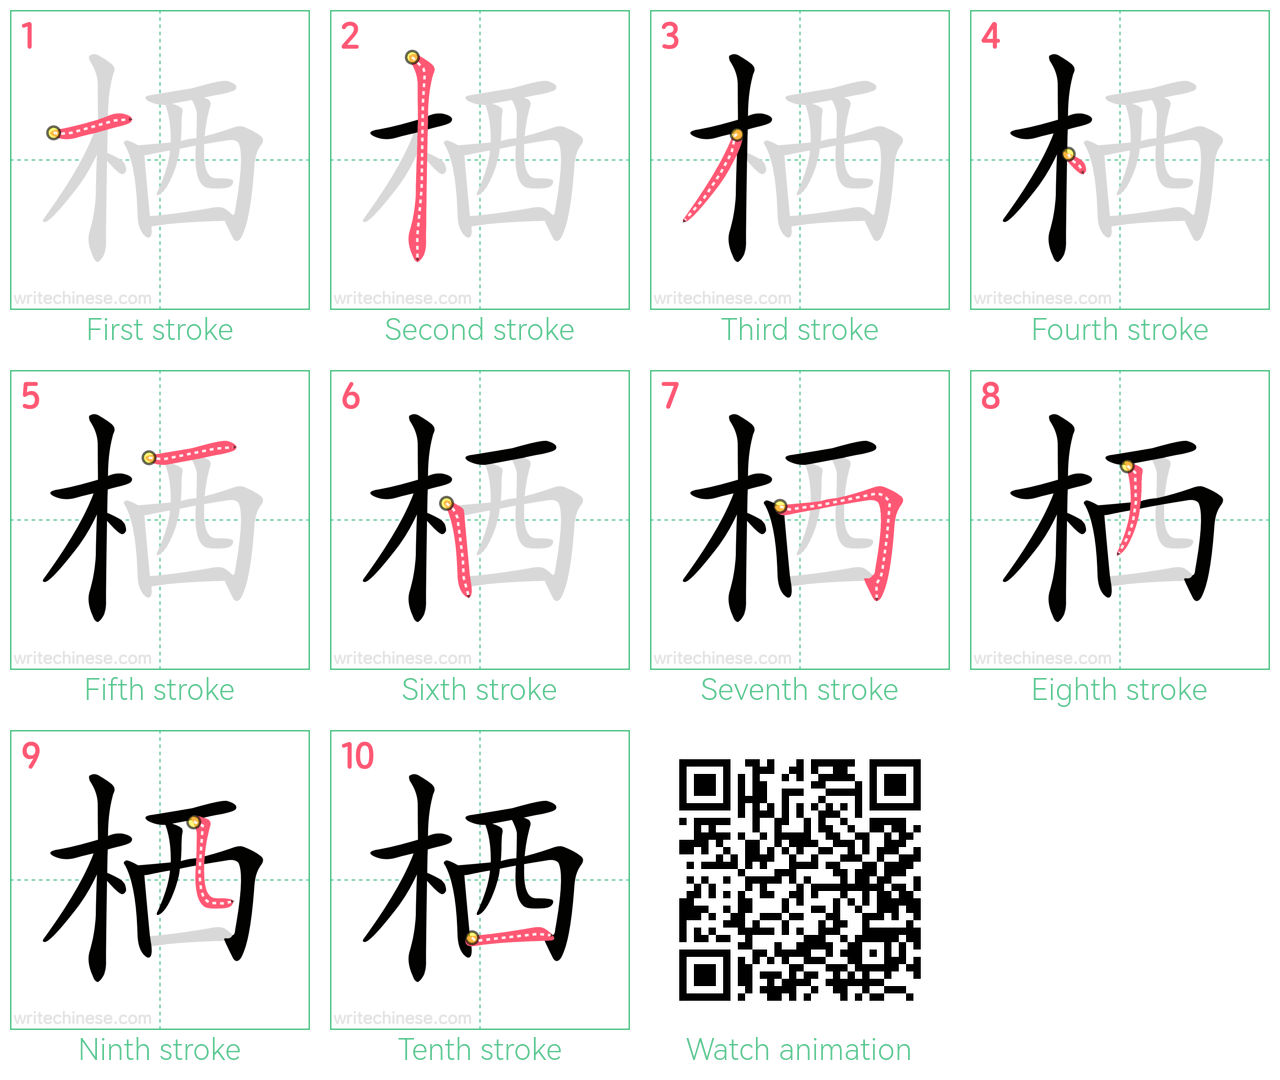 栖 step-by-step stroke order diagrams